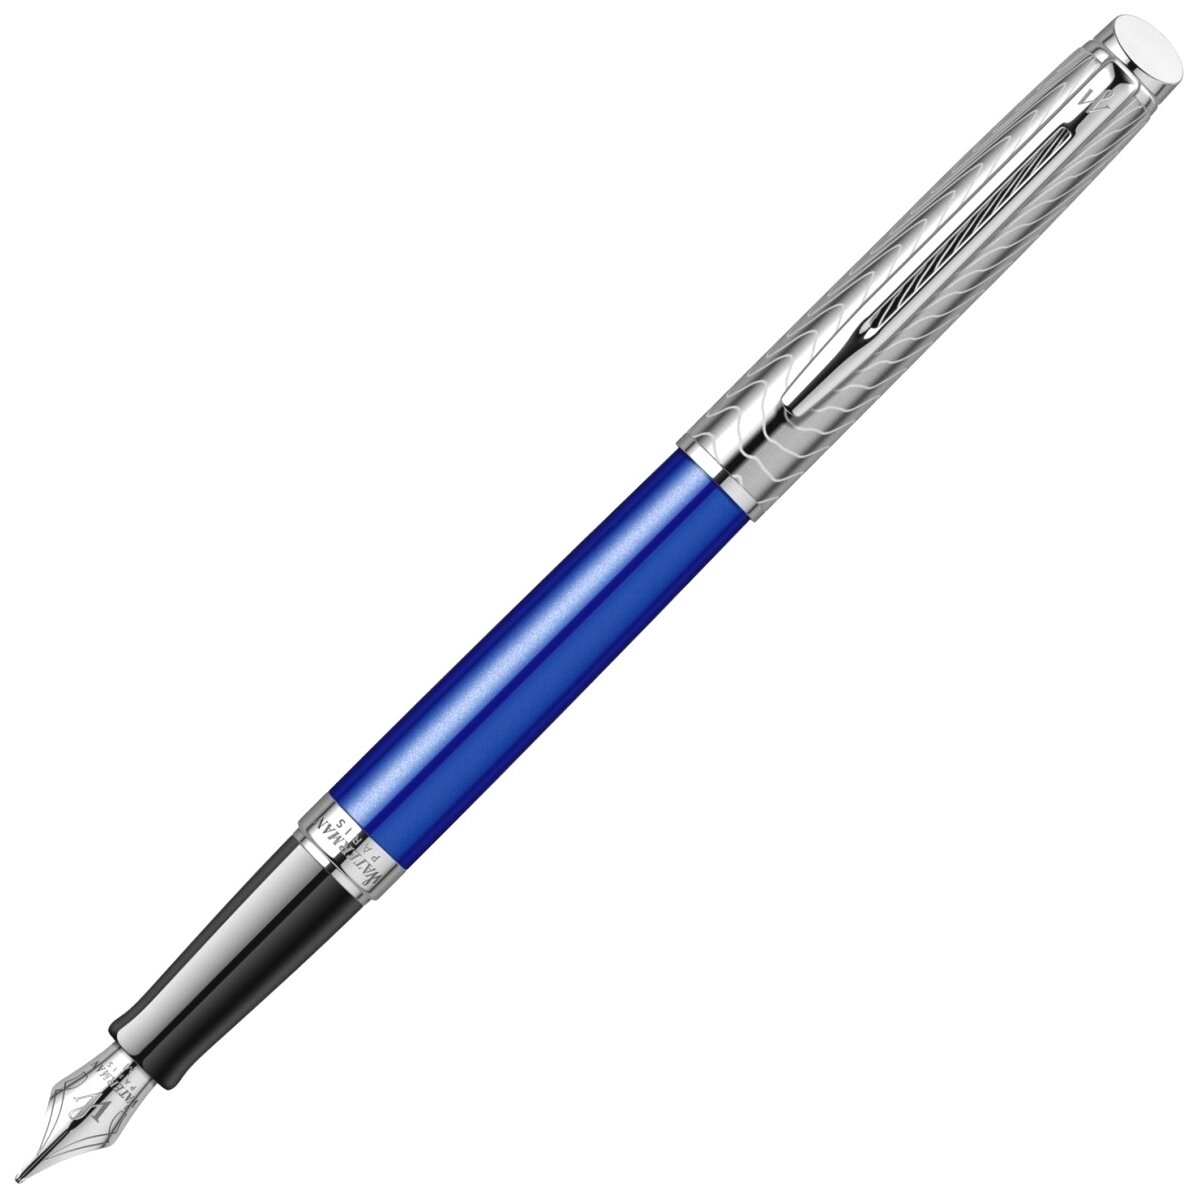 Перьевая ручка Waterman Hemisphere Deluxe Blue Wave CT перо F (2043217)